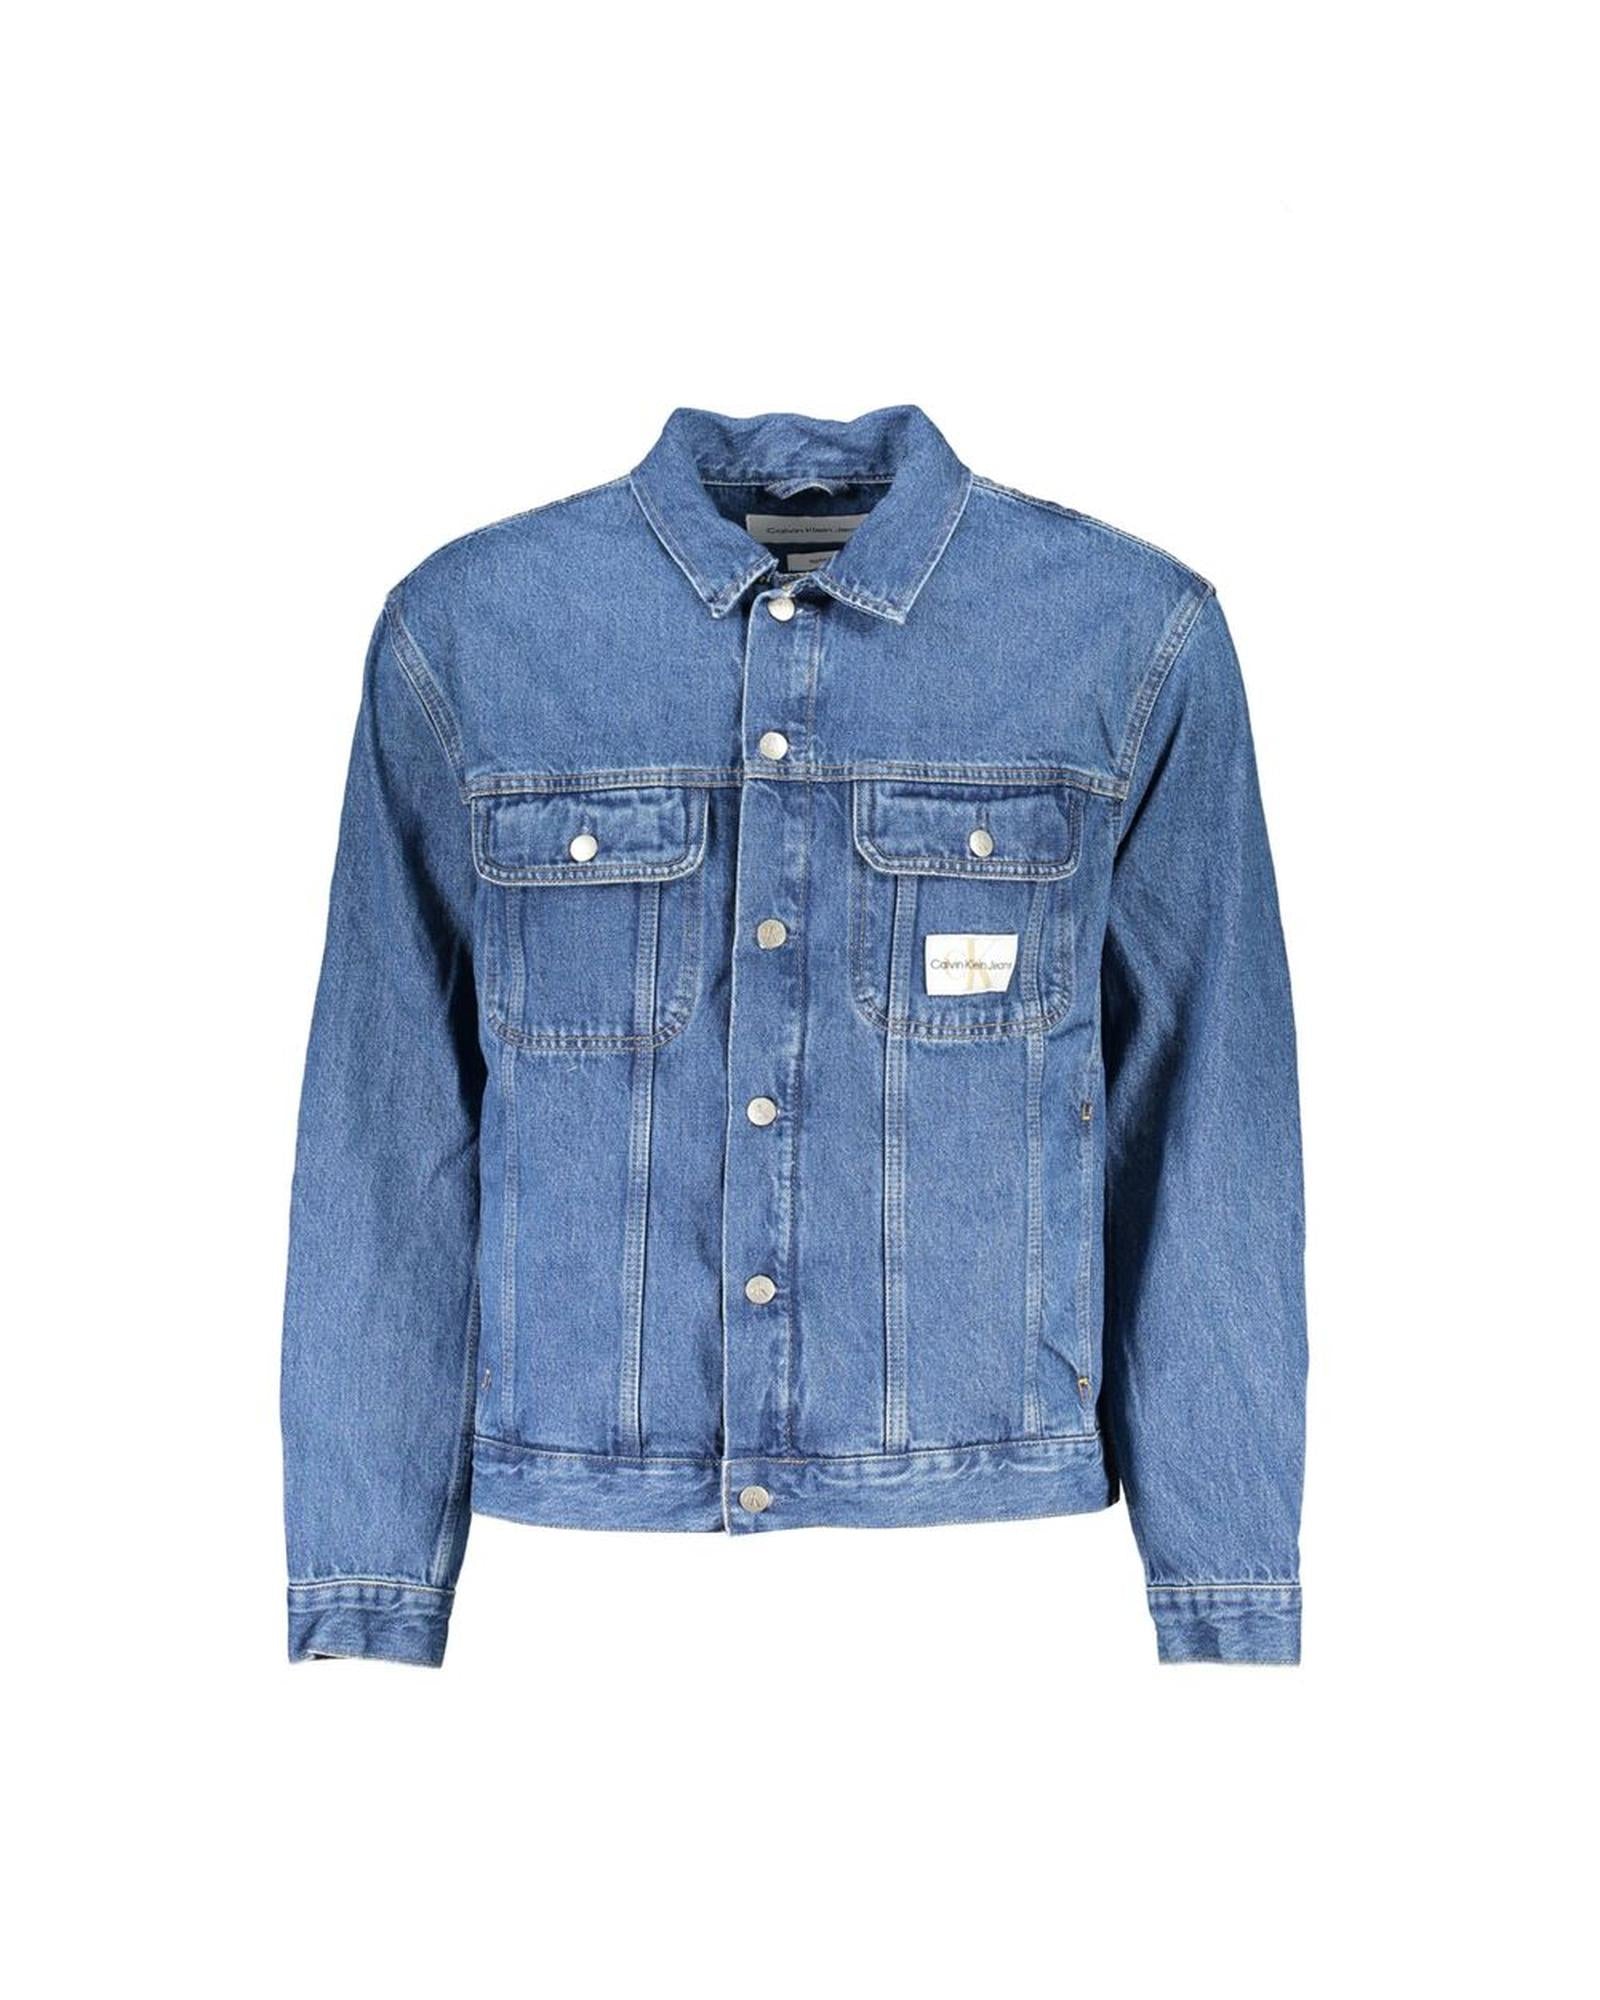 Men's Blue Cotton Jacket - XL